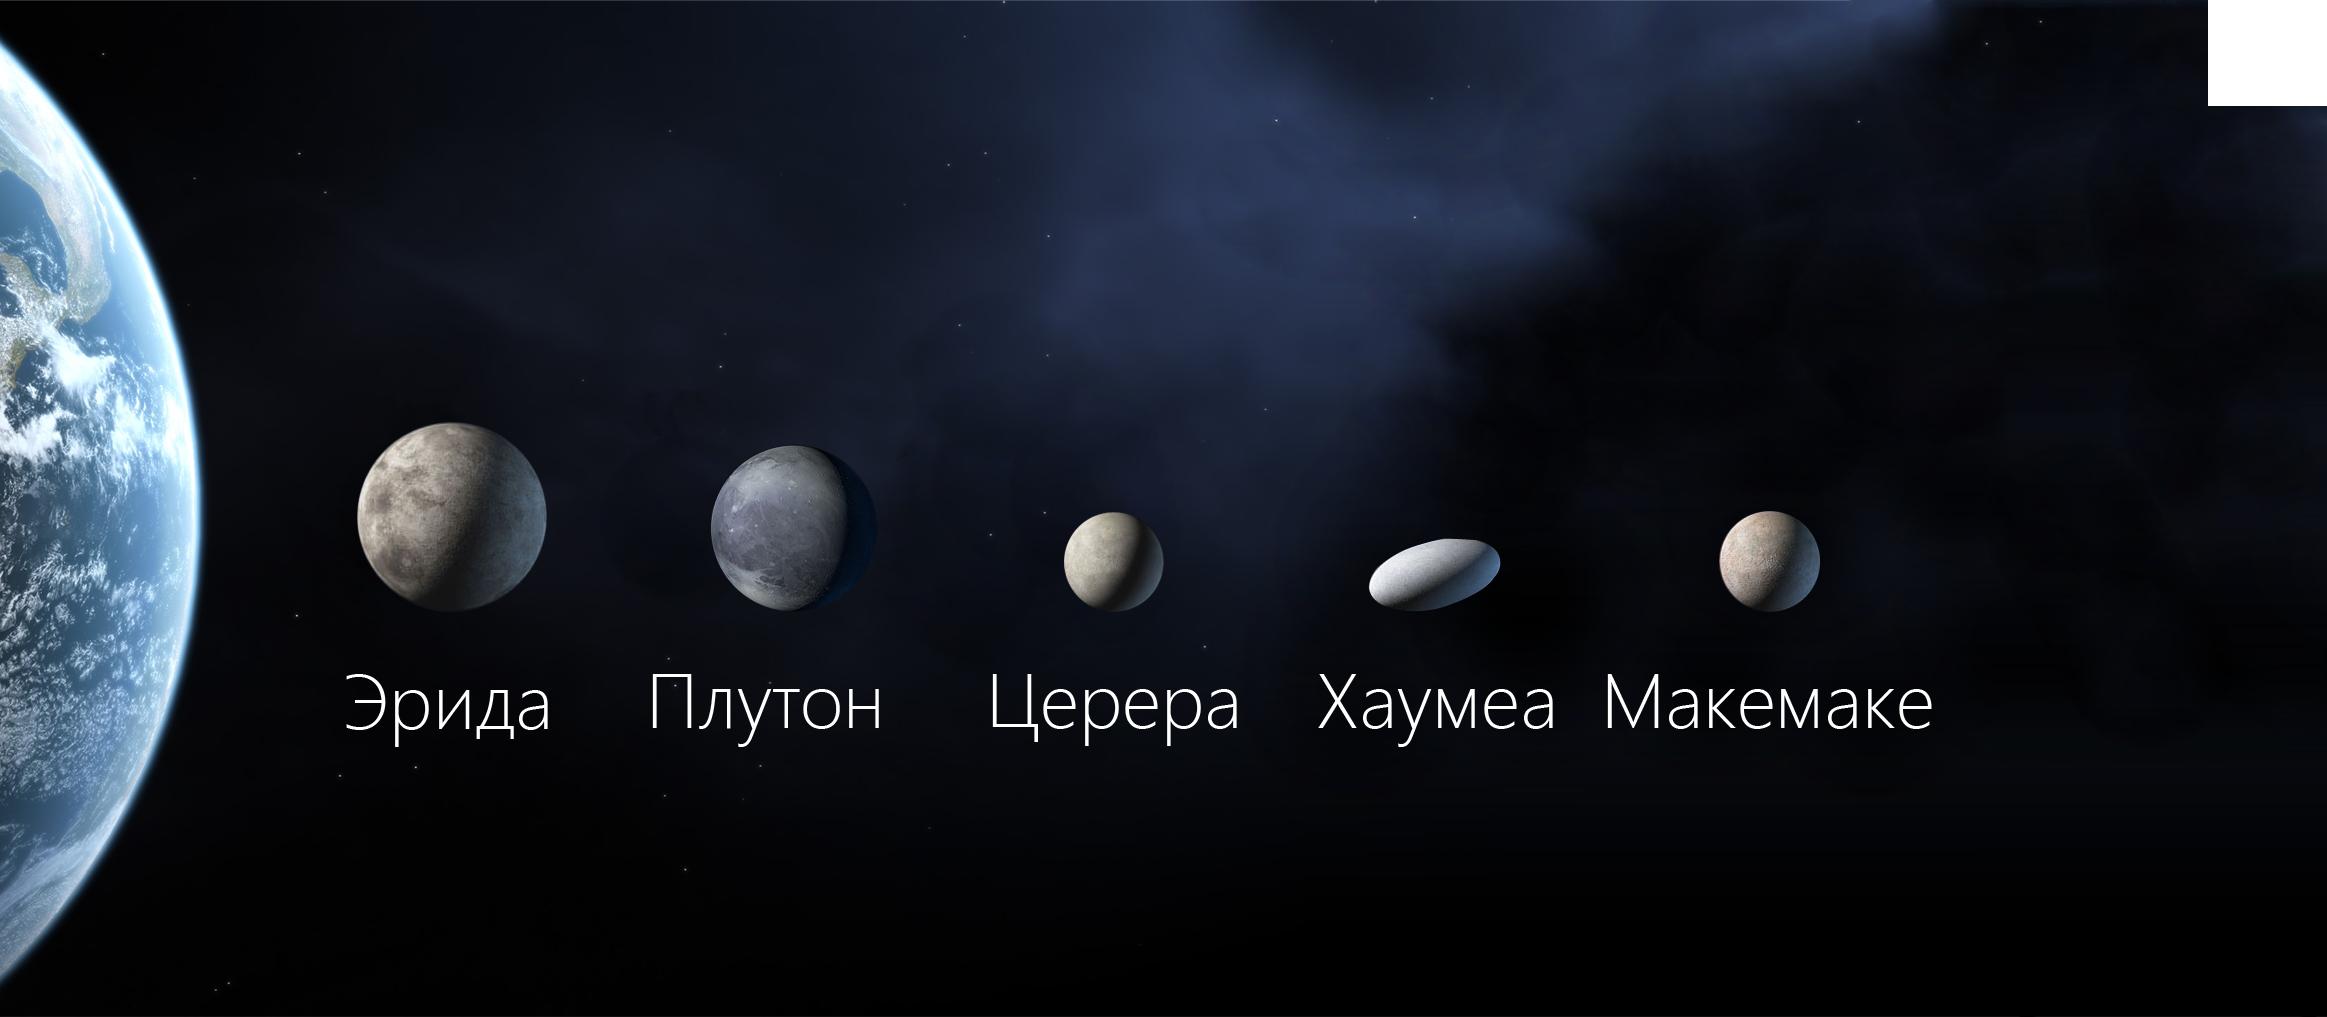 21. Другие карликовые планеты Солнечной системы - Хаумеа и Макемаке. 